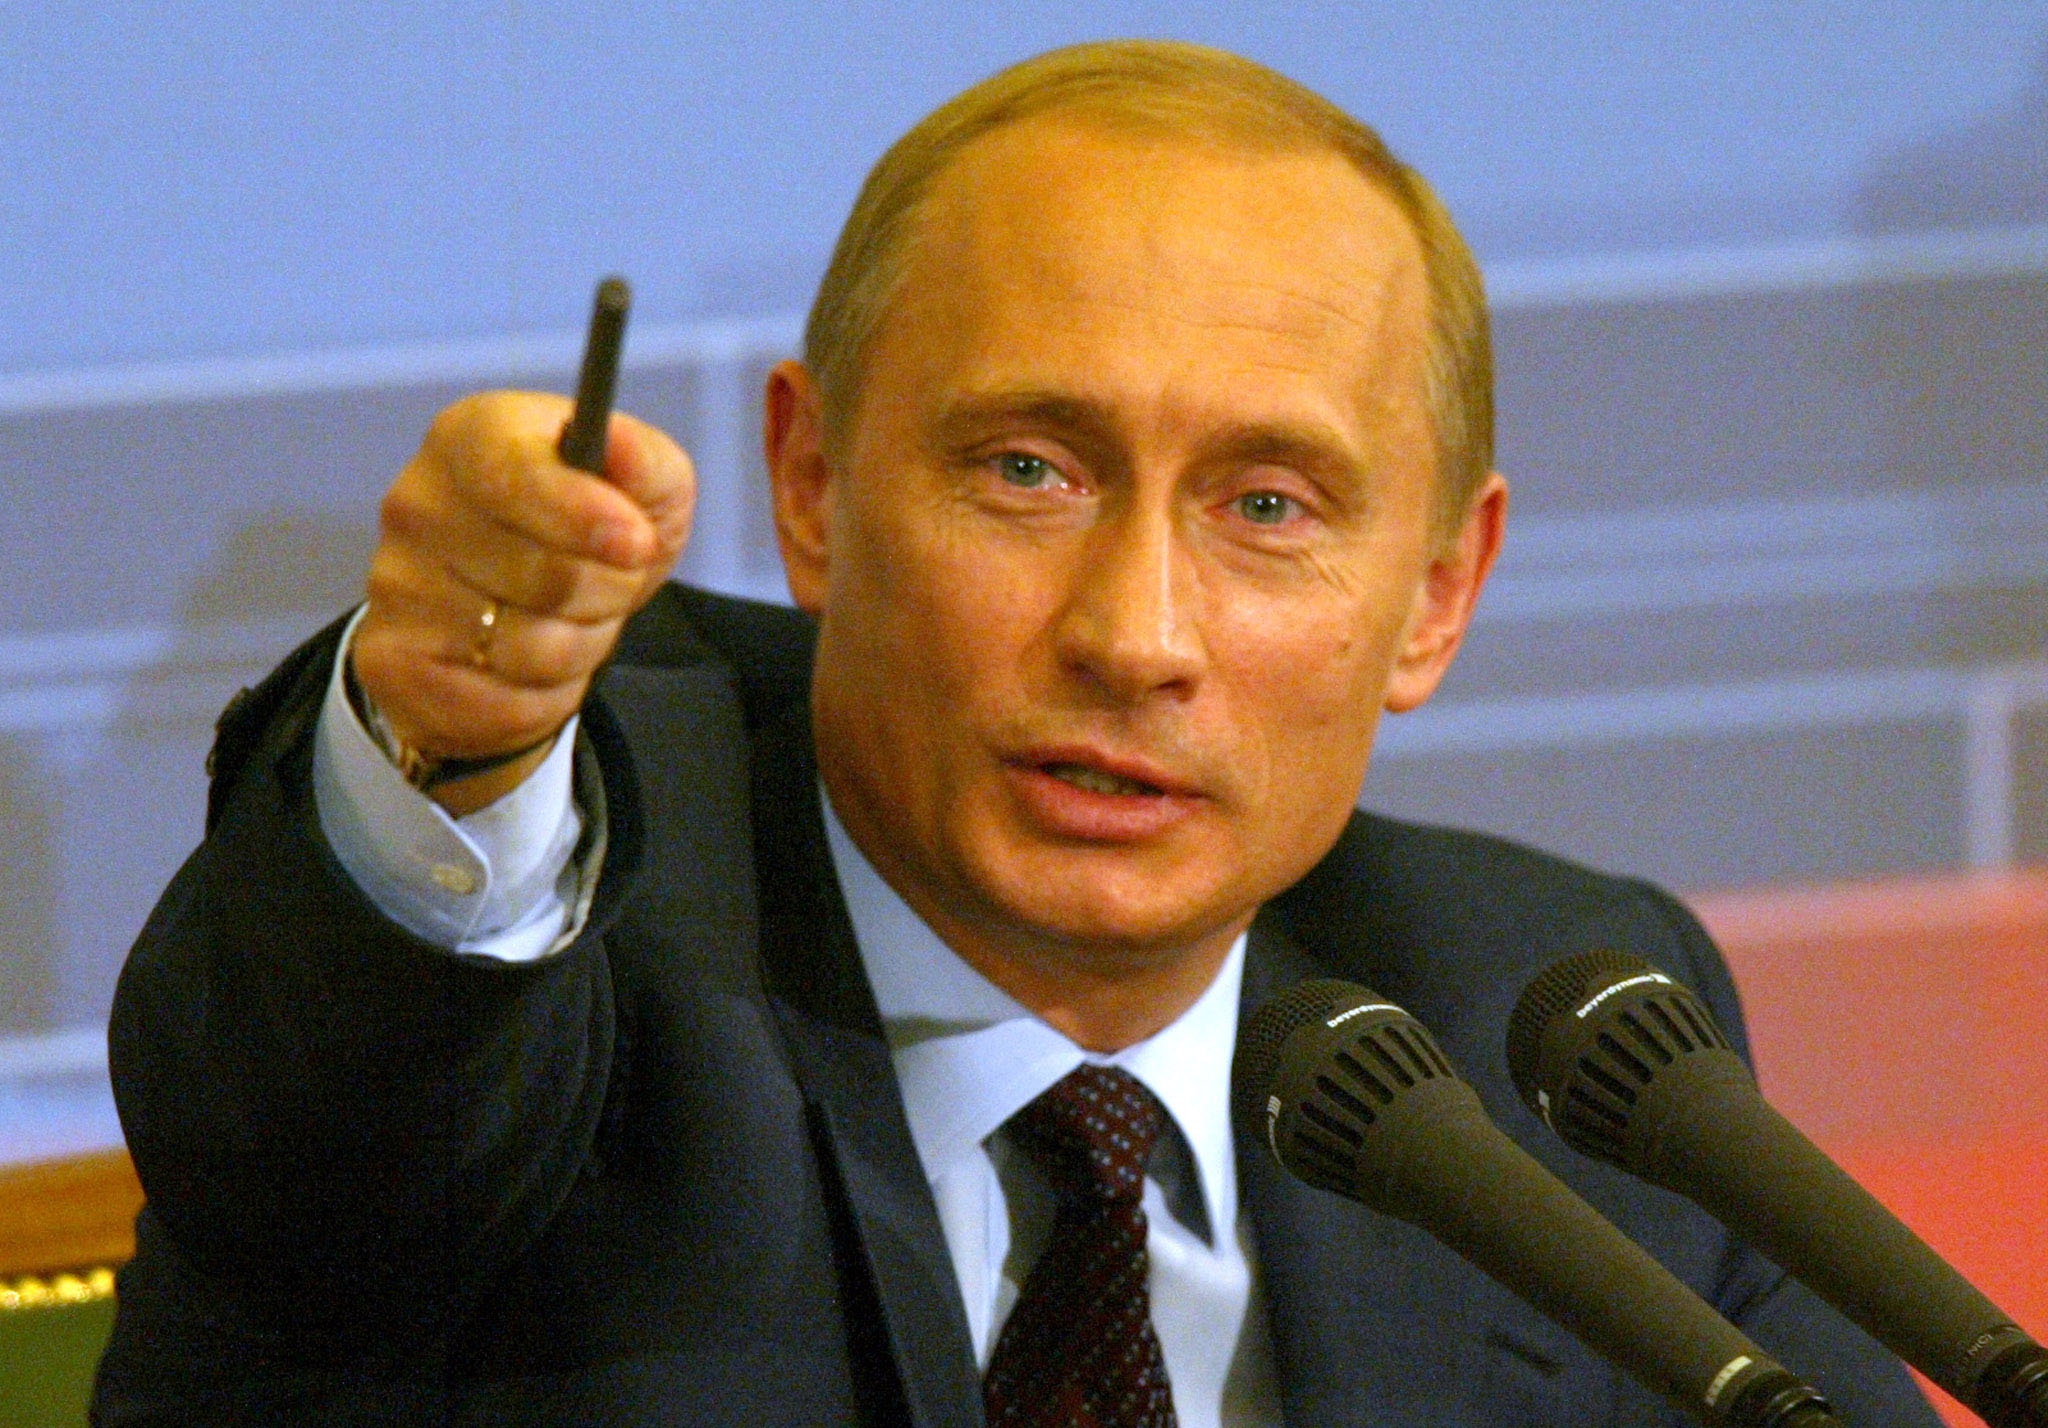 Об этом говорят: Путин отблагодарит крымских сепаратистов. Кремль отстранит Гоблина и компанию от должностей